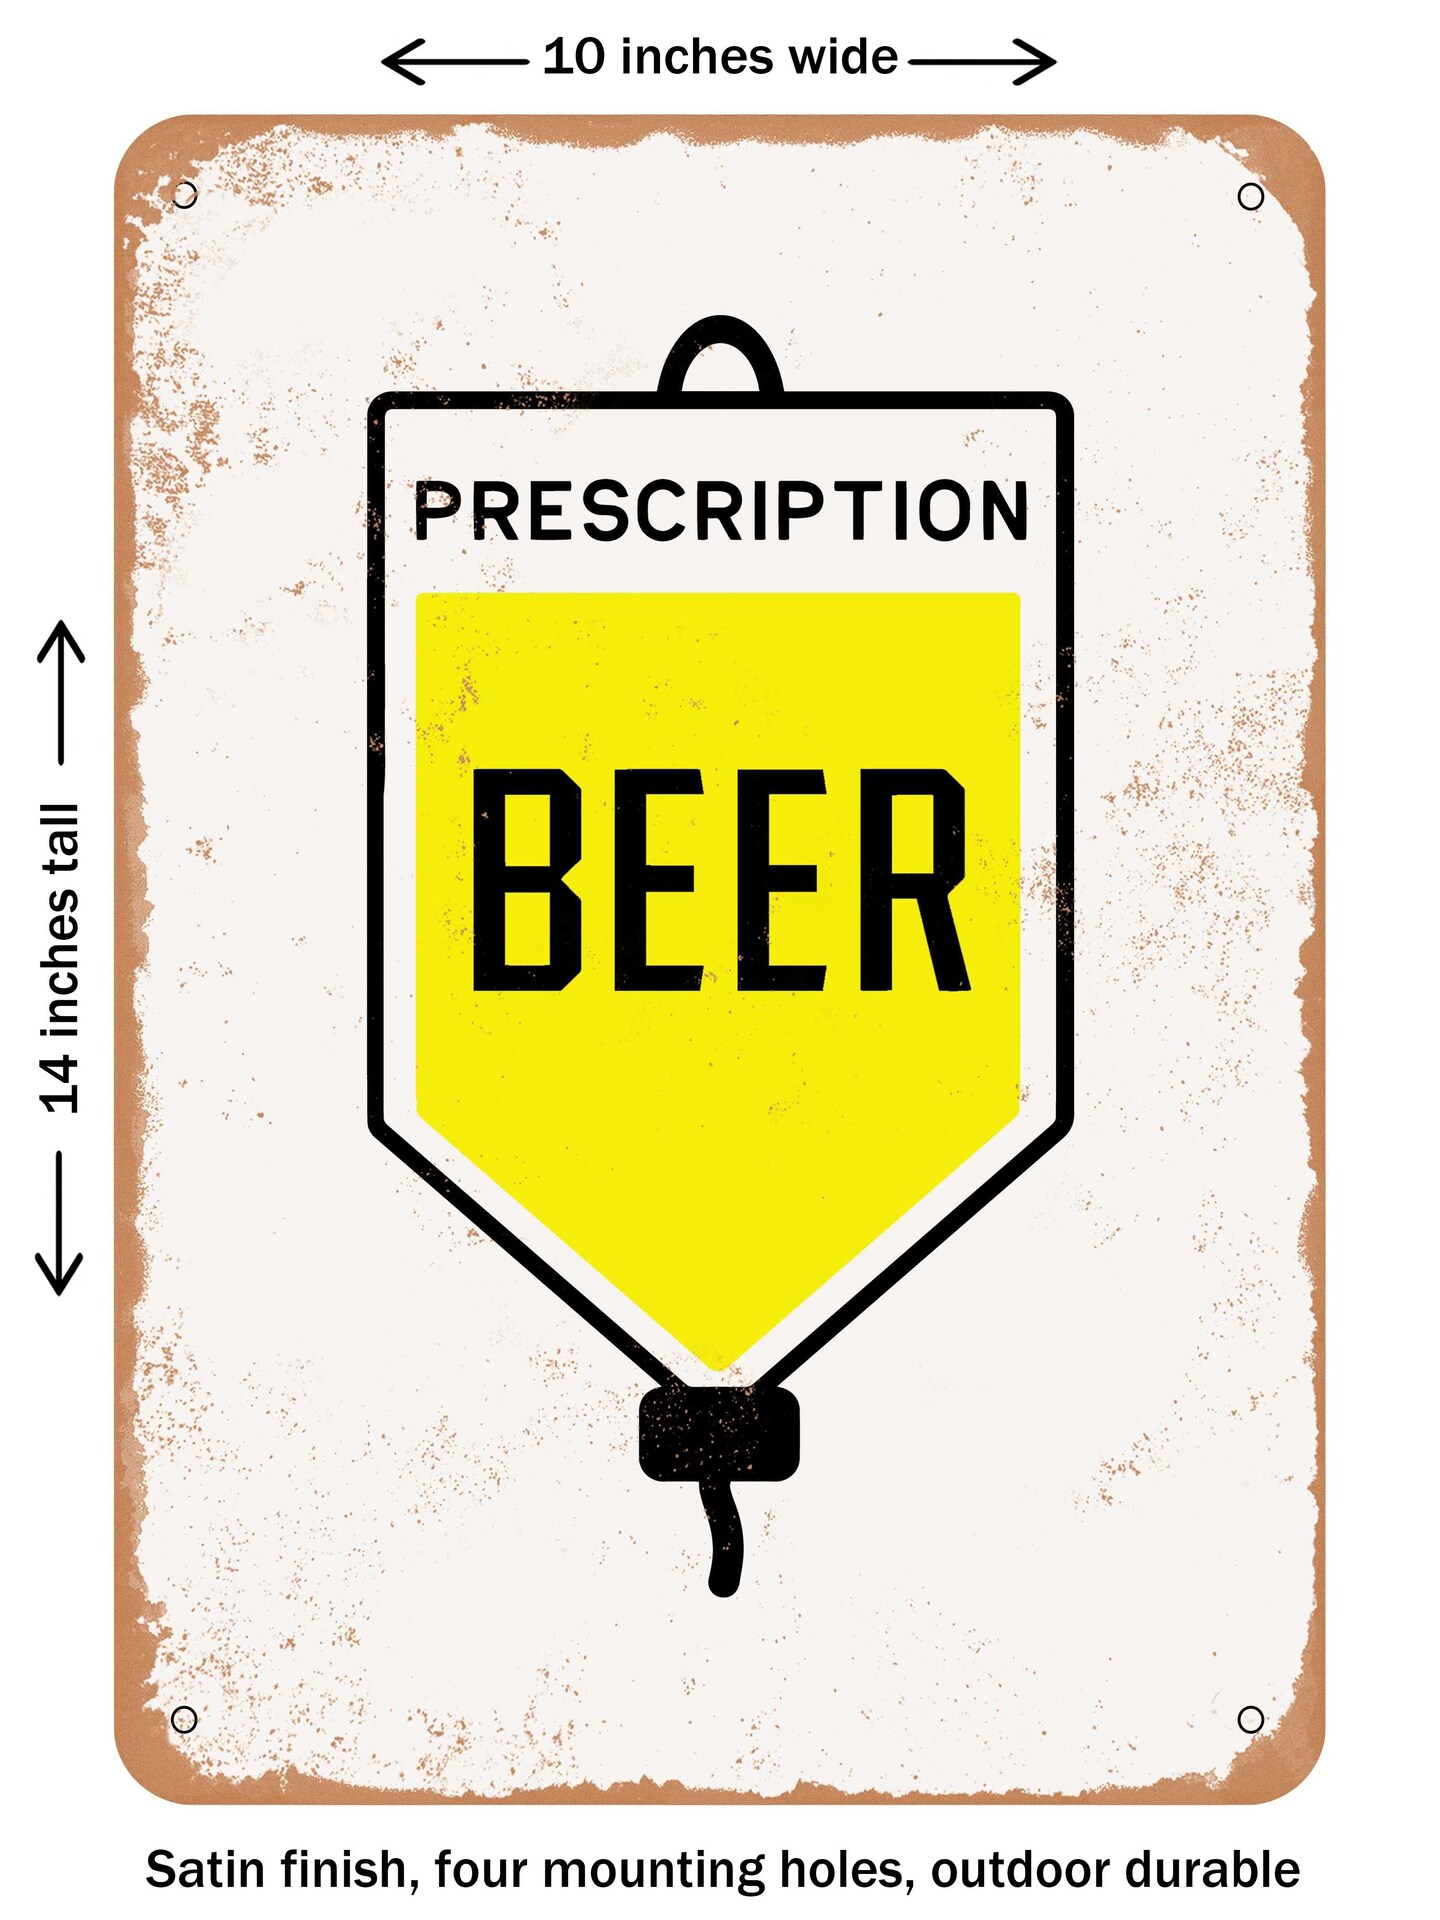 DECORATIVE METAL SIGN - Prescription Beer - Vintage Rusty Look